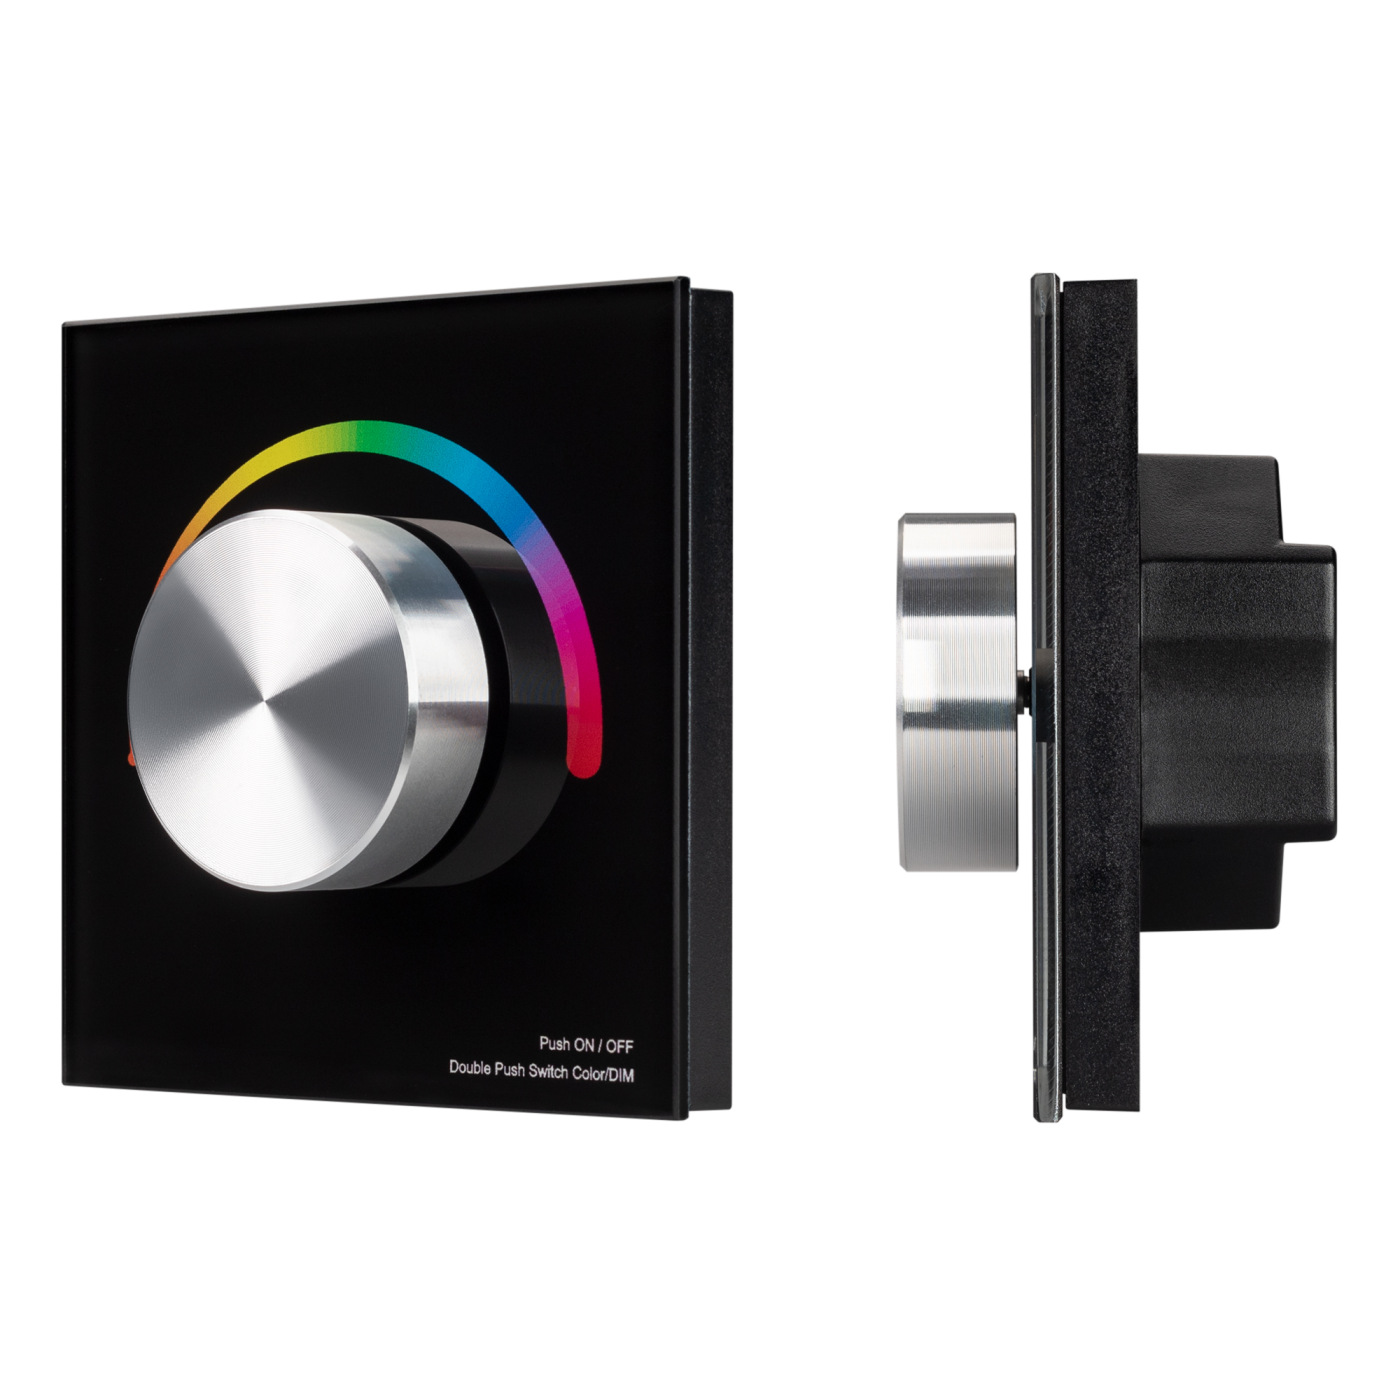 Панель SMART-P8-RGB-G-IN Black (12-24V, 3x4A, Rotary, 2.4G) (Arlight, IP20 Пластик, 5 лет) диммер sr 2005 silver r 12 36v 96 288w ir sensor arlight